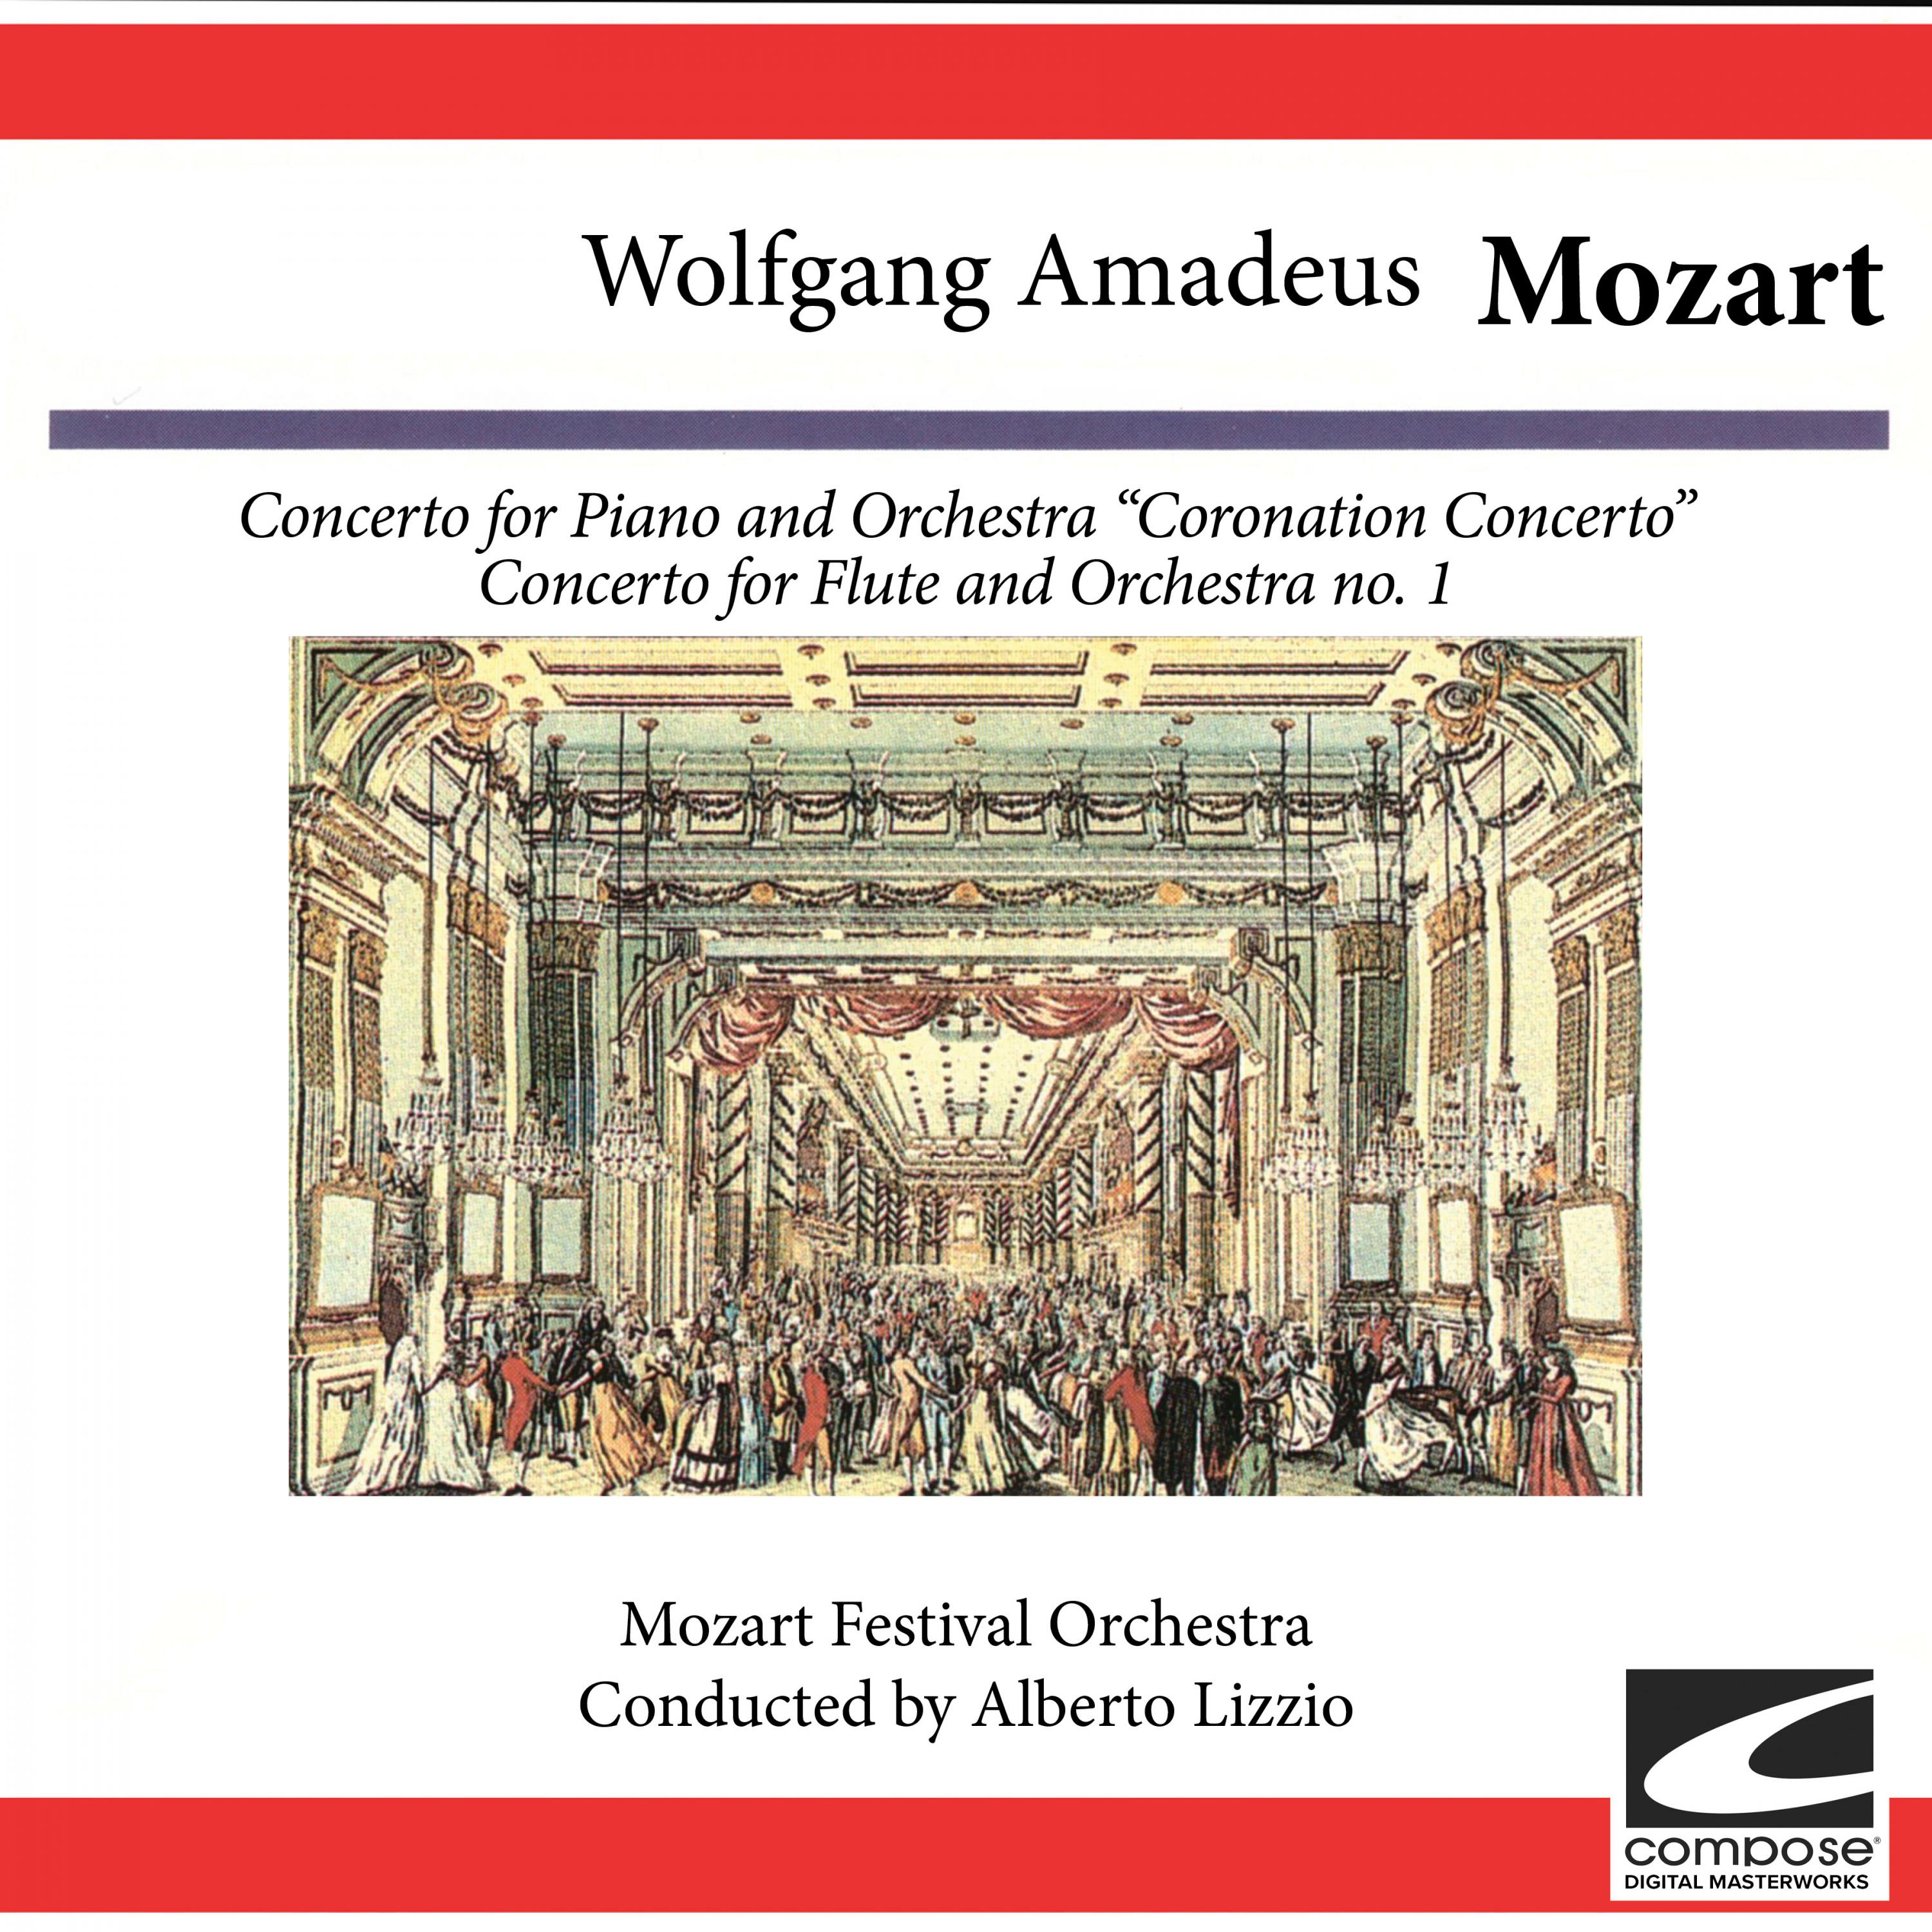 Mozart Festival Orchestra - Concerto for Flute and Orchestra No. 1 in G Major, KV 313: Rondo - Tempo di menuetto (feat. Alberto Lizzio)